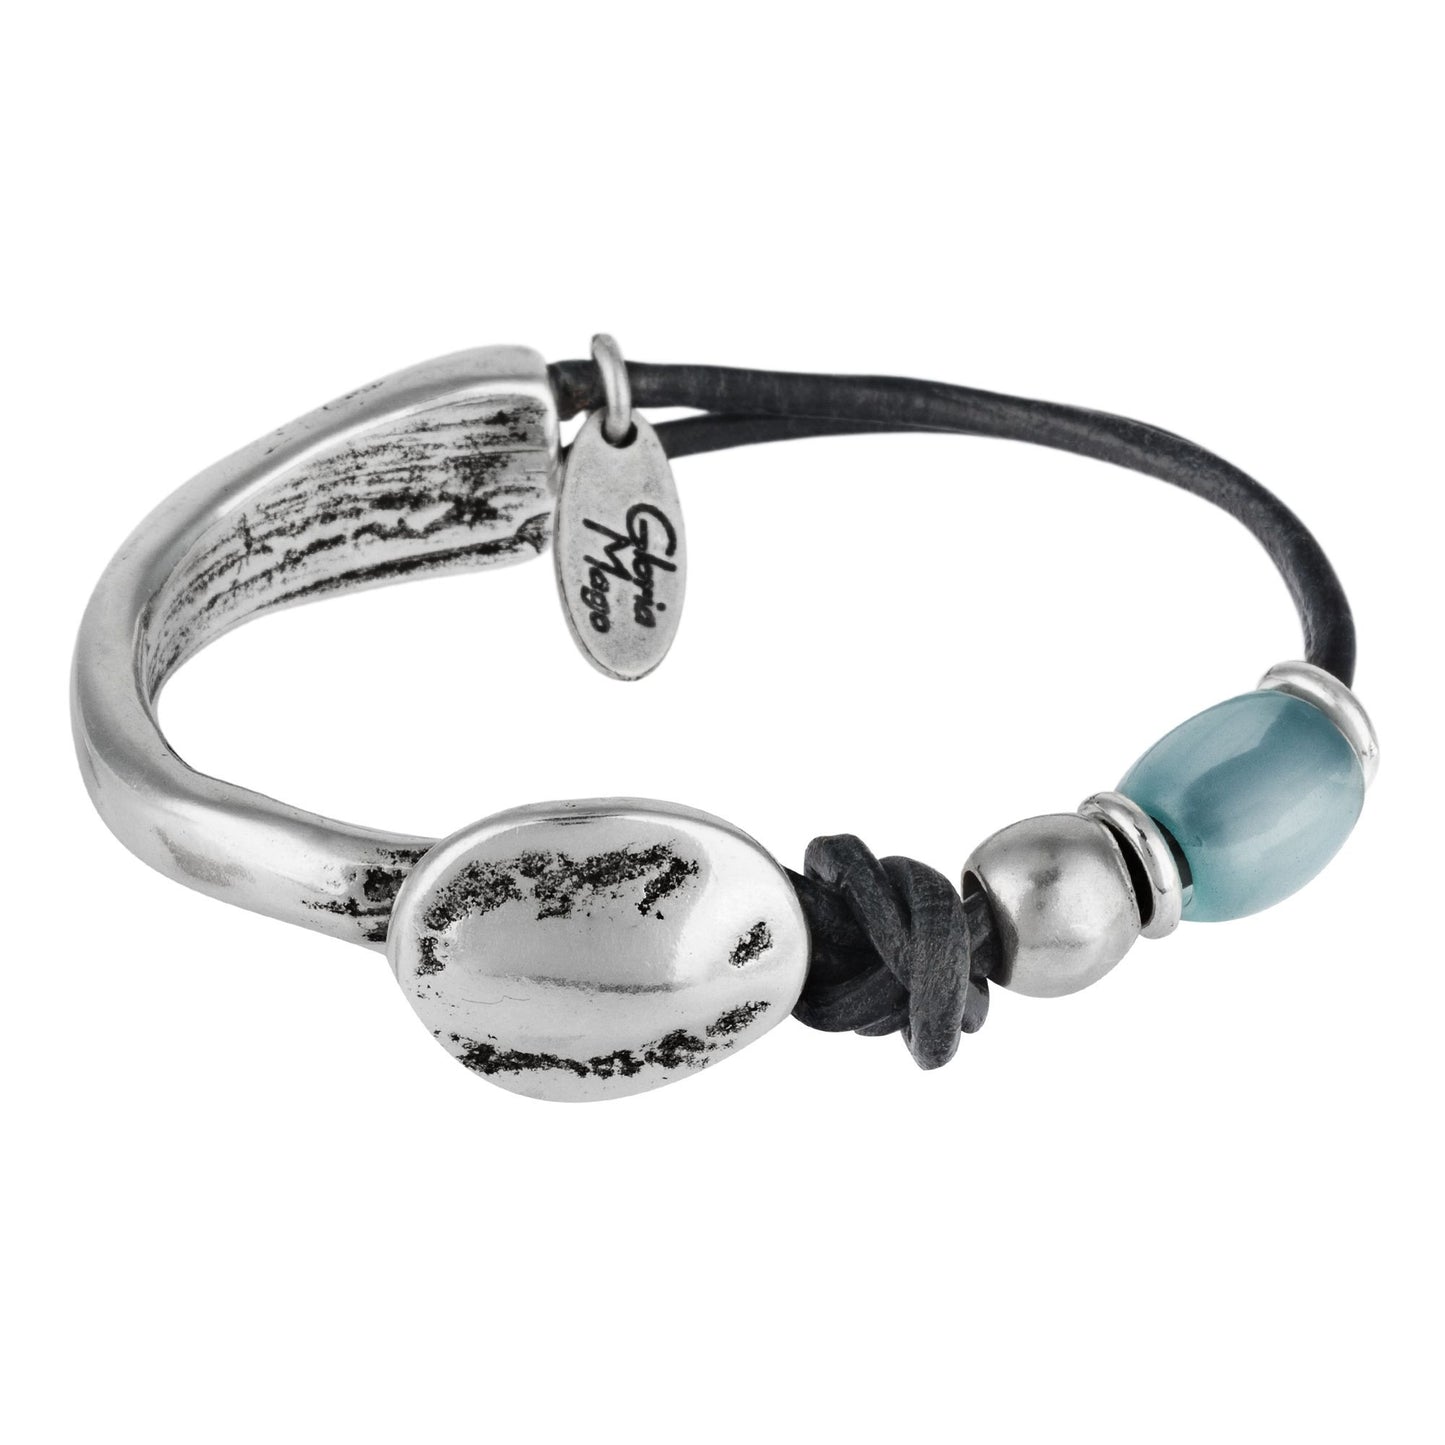 Zama aquamarine leather and silver plated bracelet